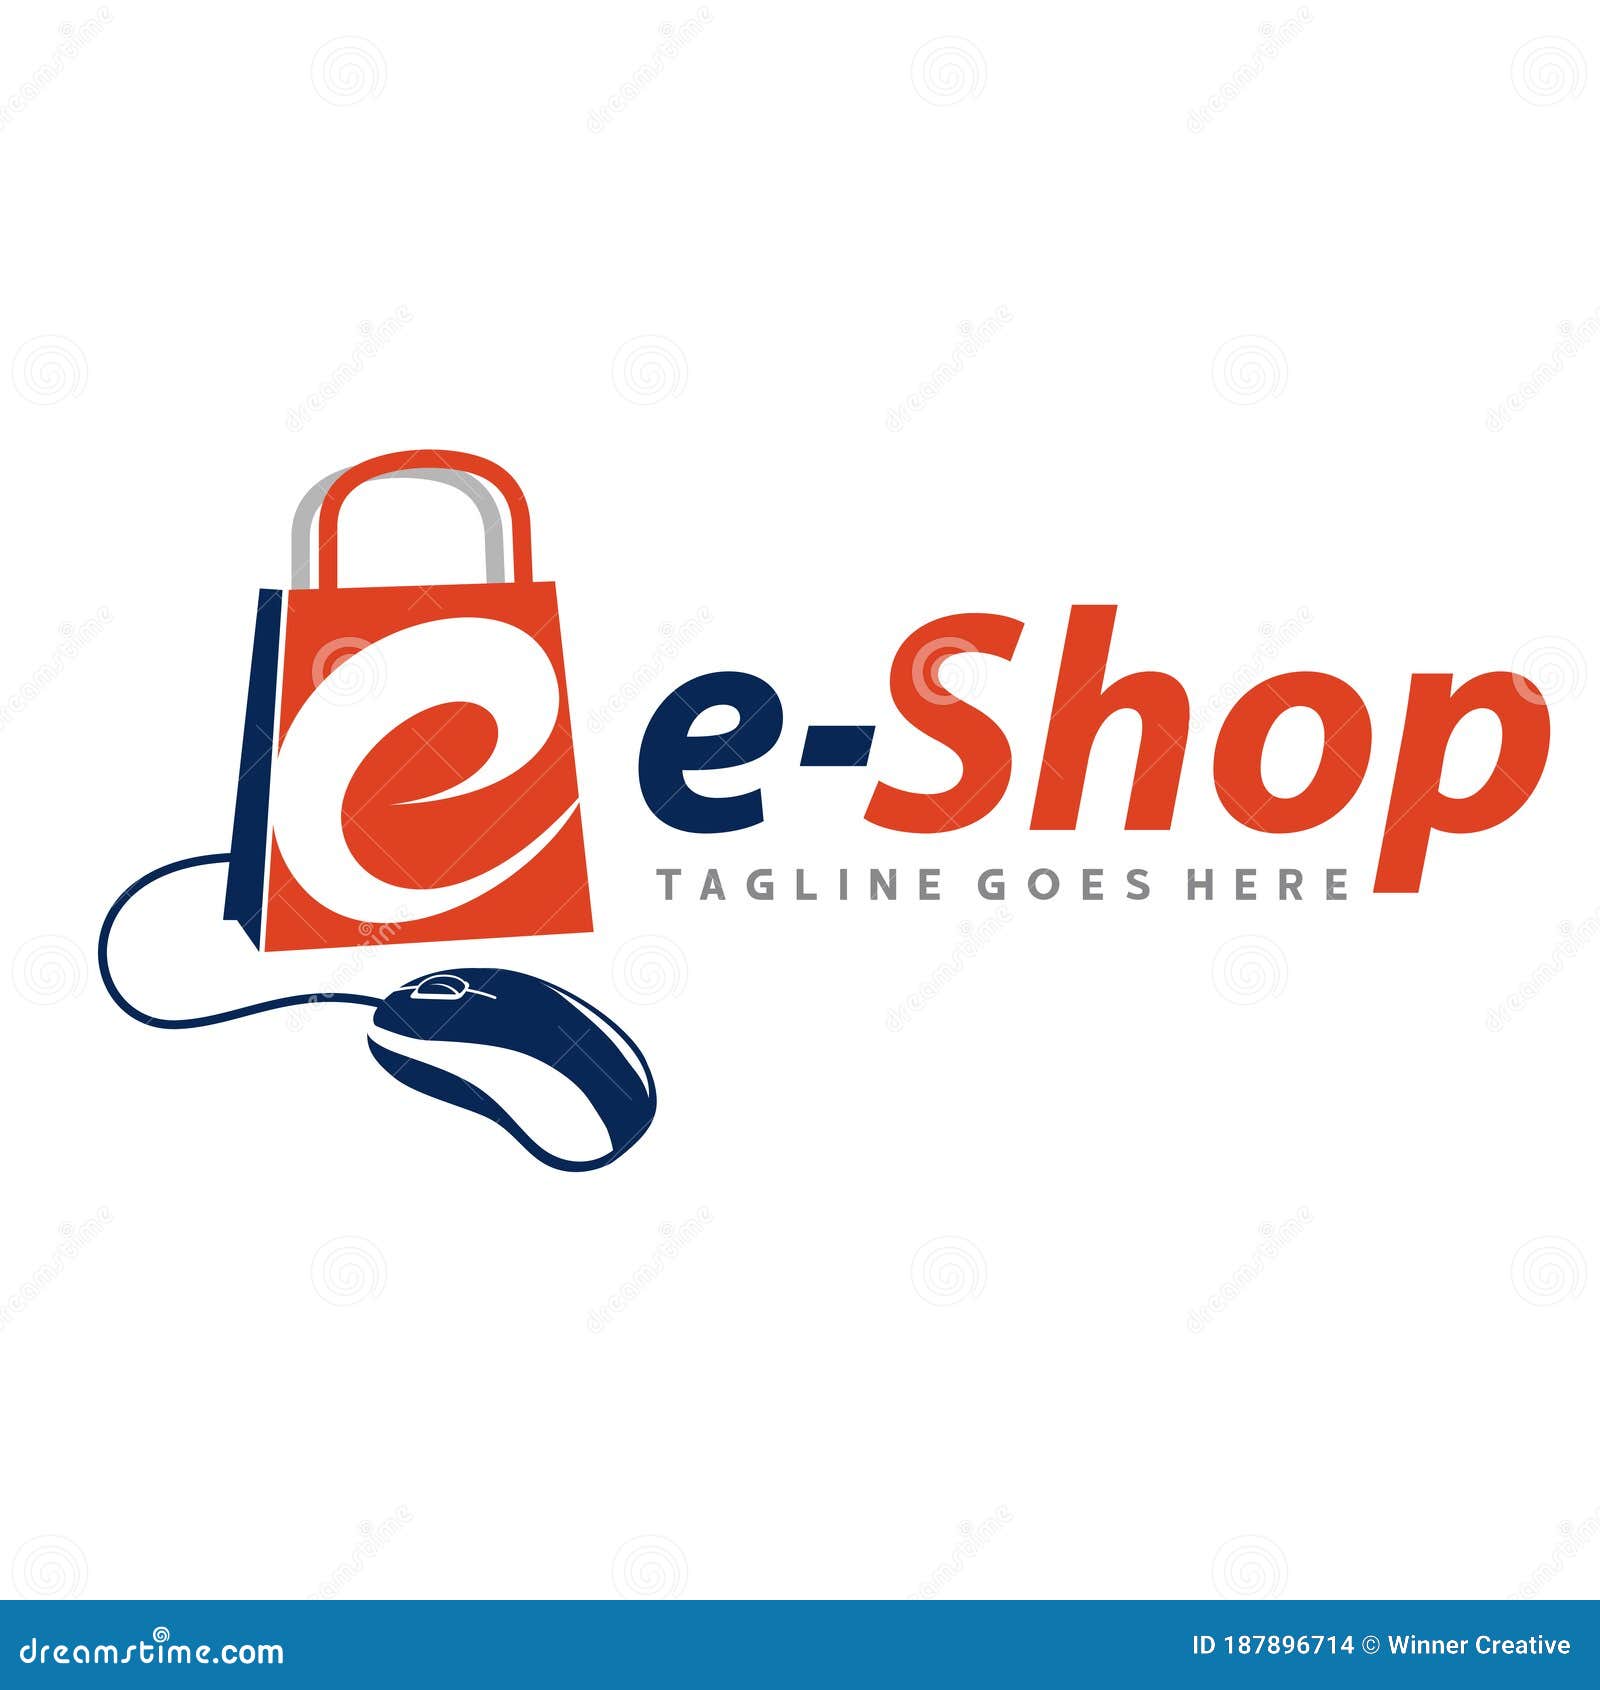 All good shop. Shop of goods logo. E shop logo.